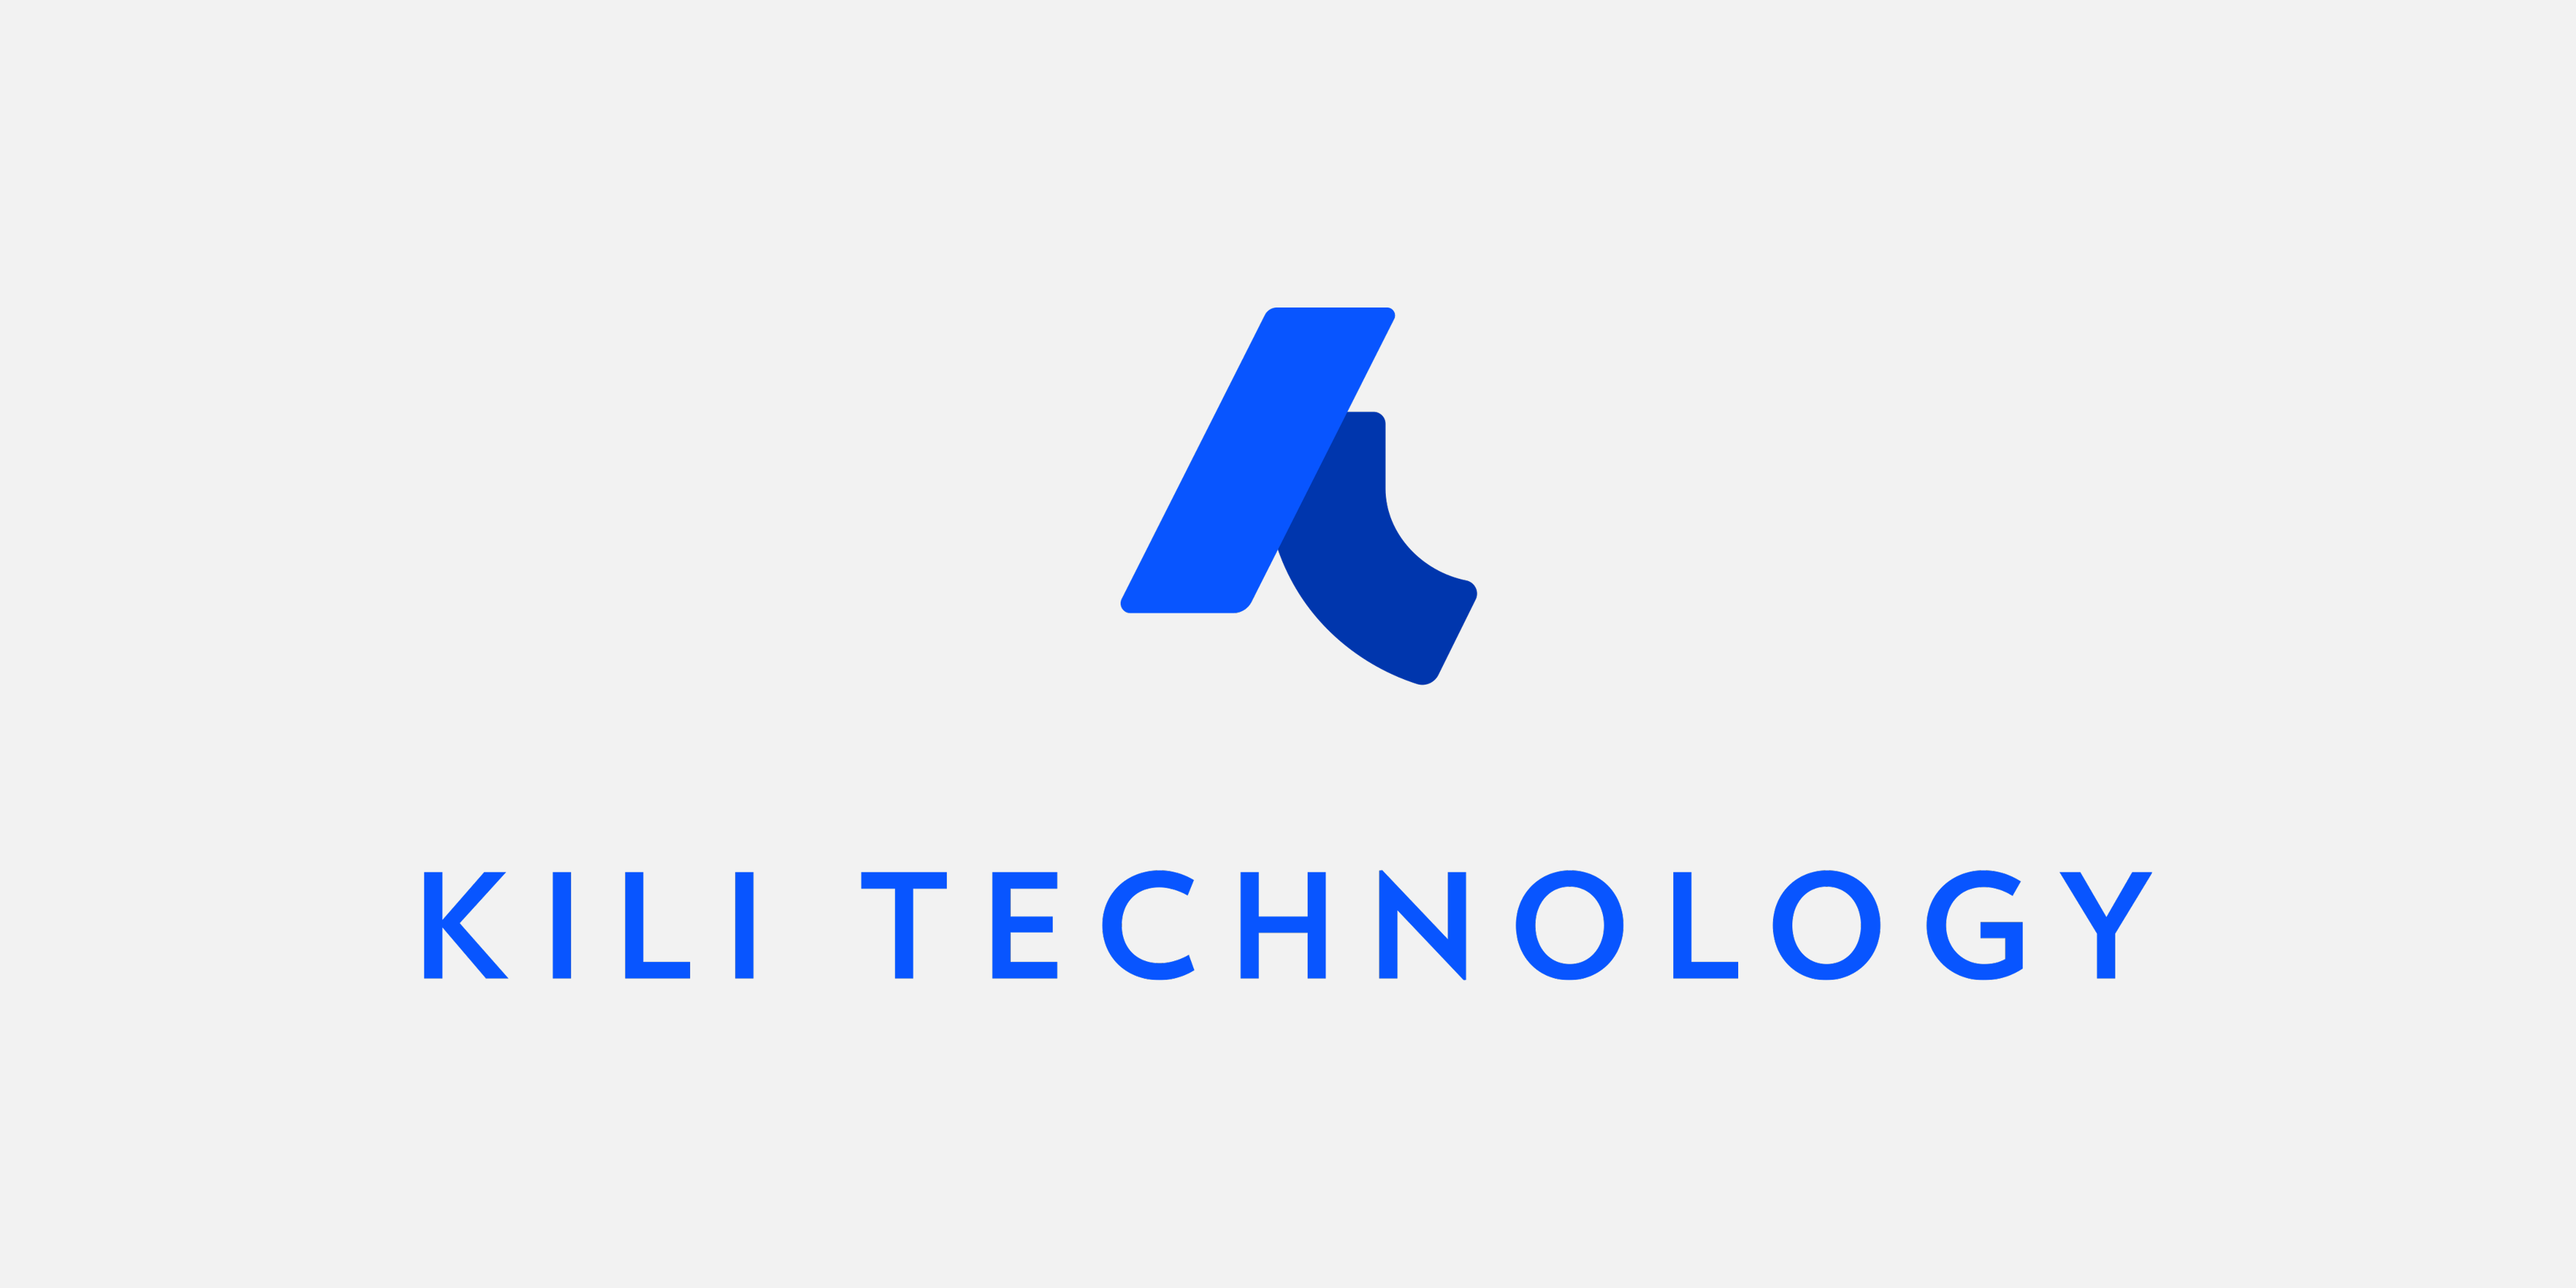 Fondée en 2018 par François-Xavier Leduc et Edouard d'Archimbaud, Kili Technology a mis au point une technologie d'annotation automatisée des données,